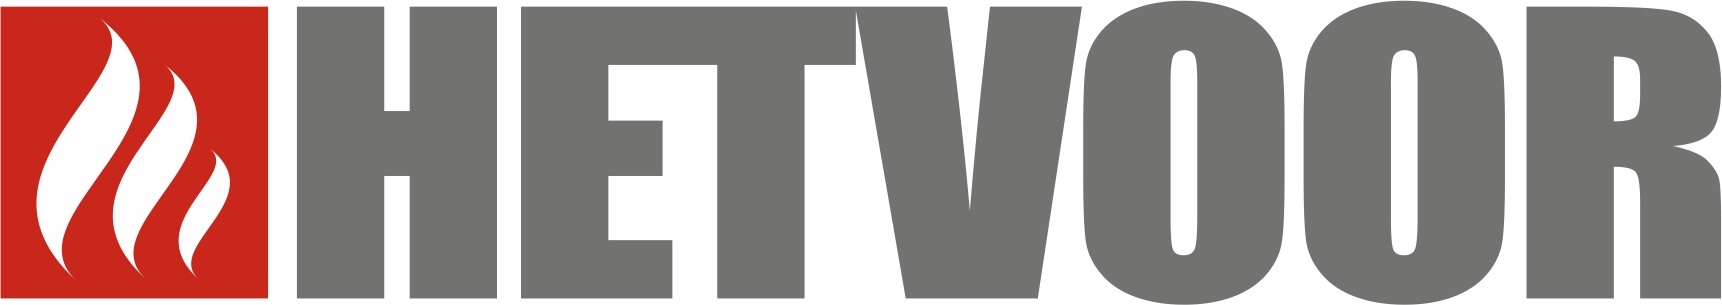 Hetvoor Distribution logo